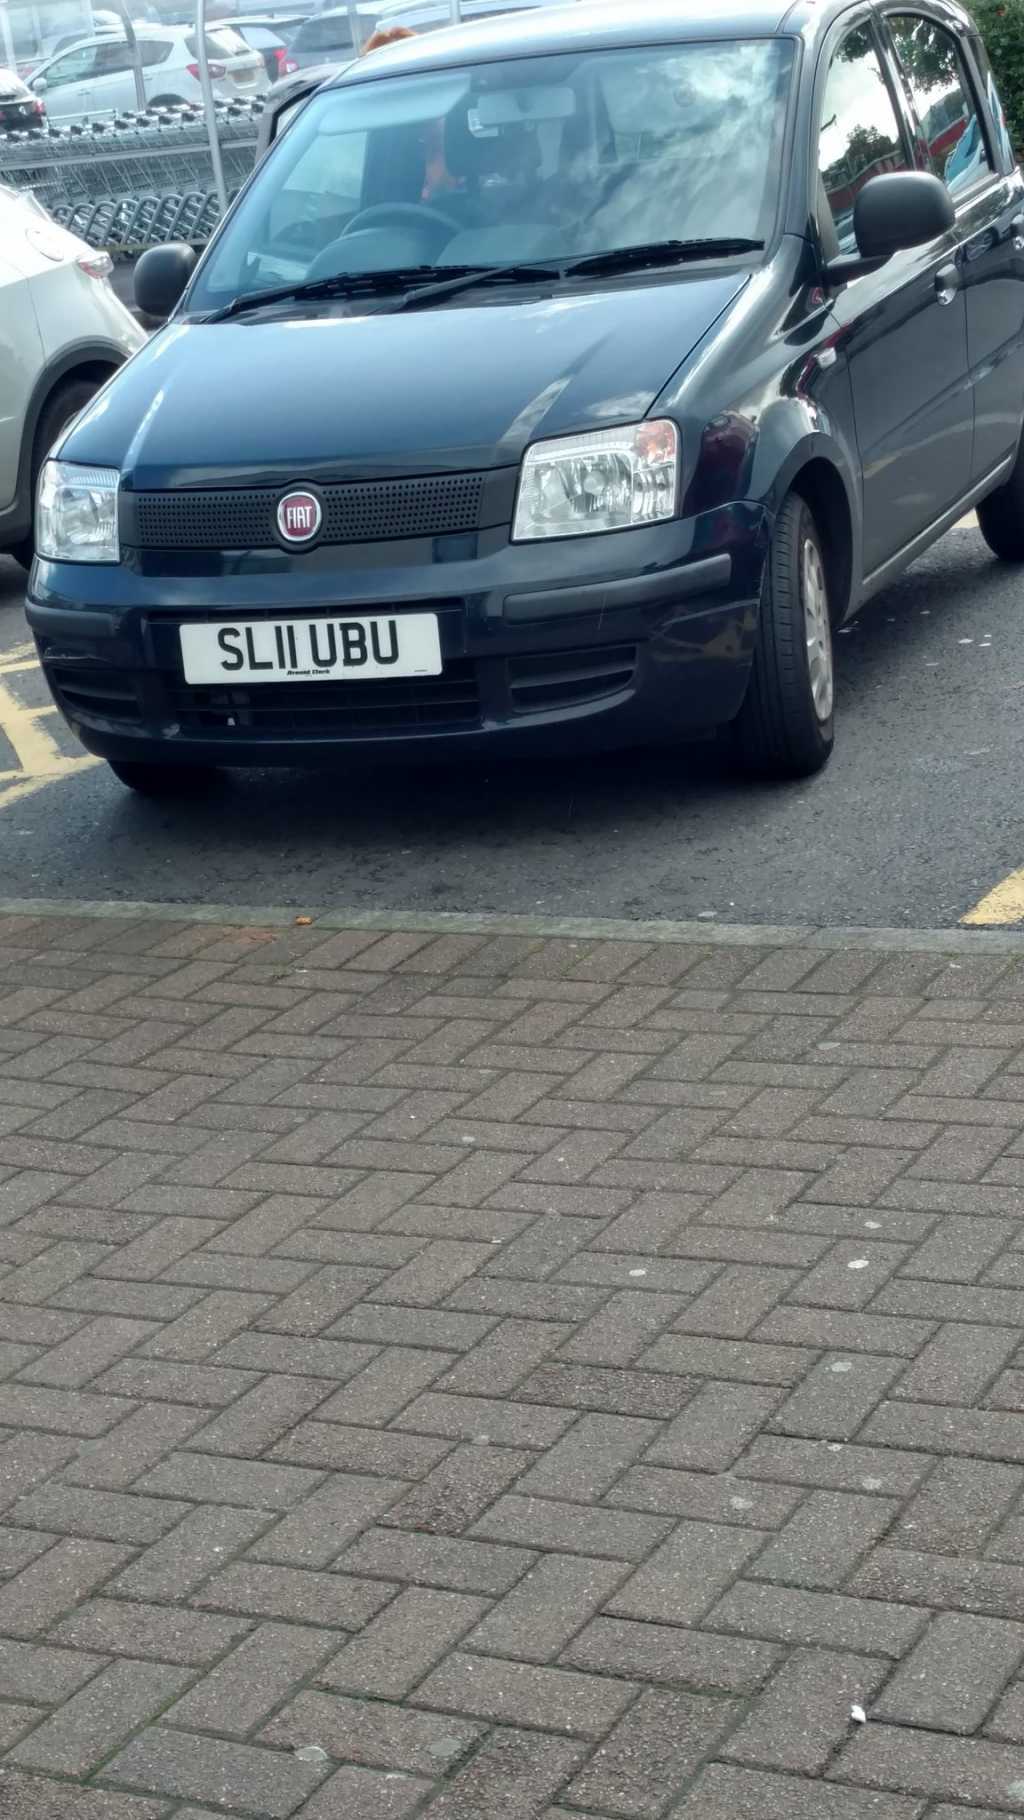 SL11 UBU displaying Selfish Parking